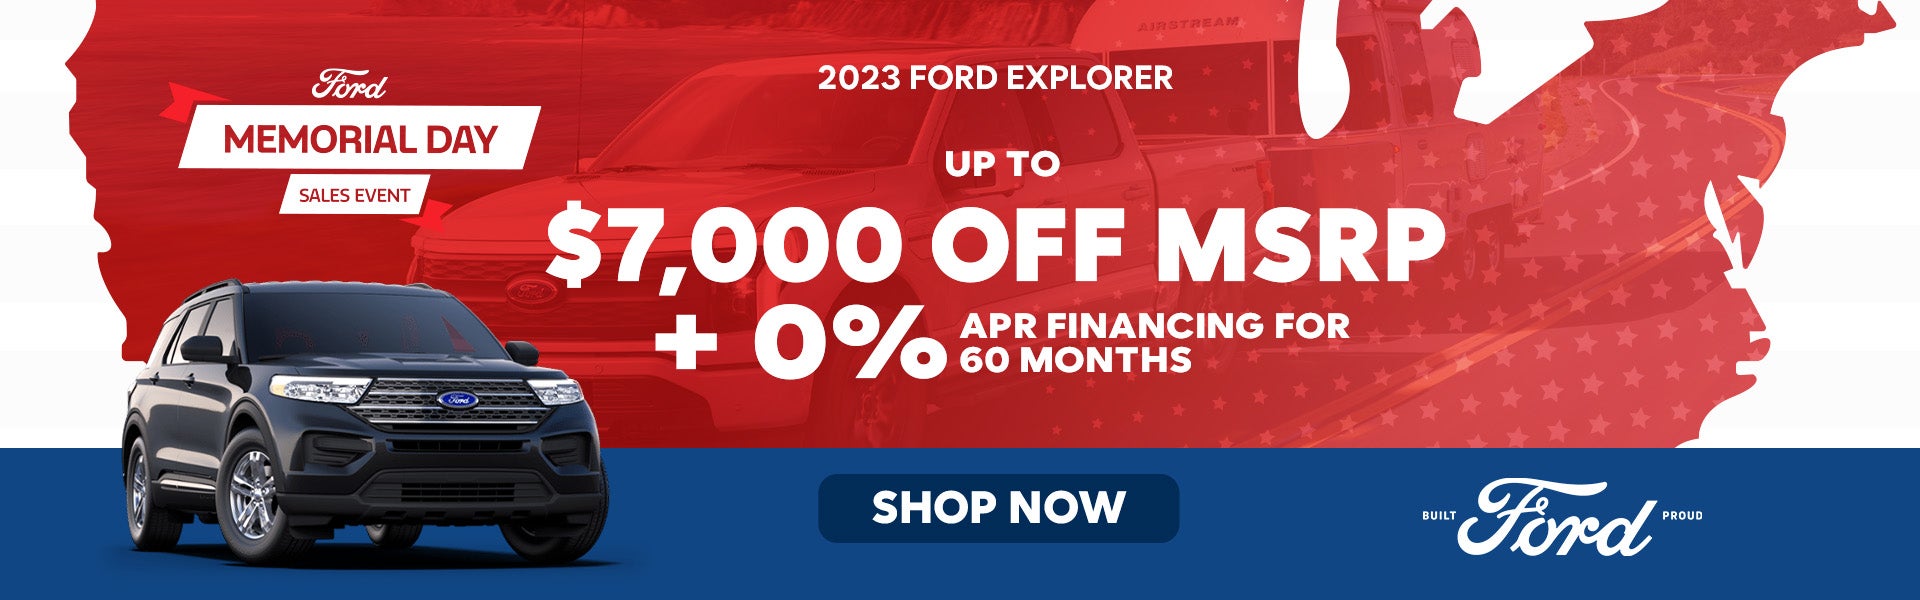 2023 Ford Explorer 